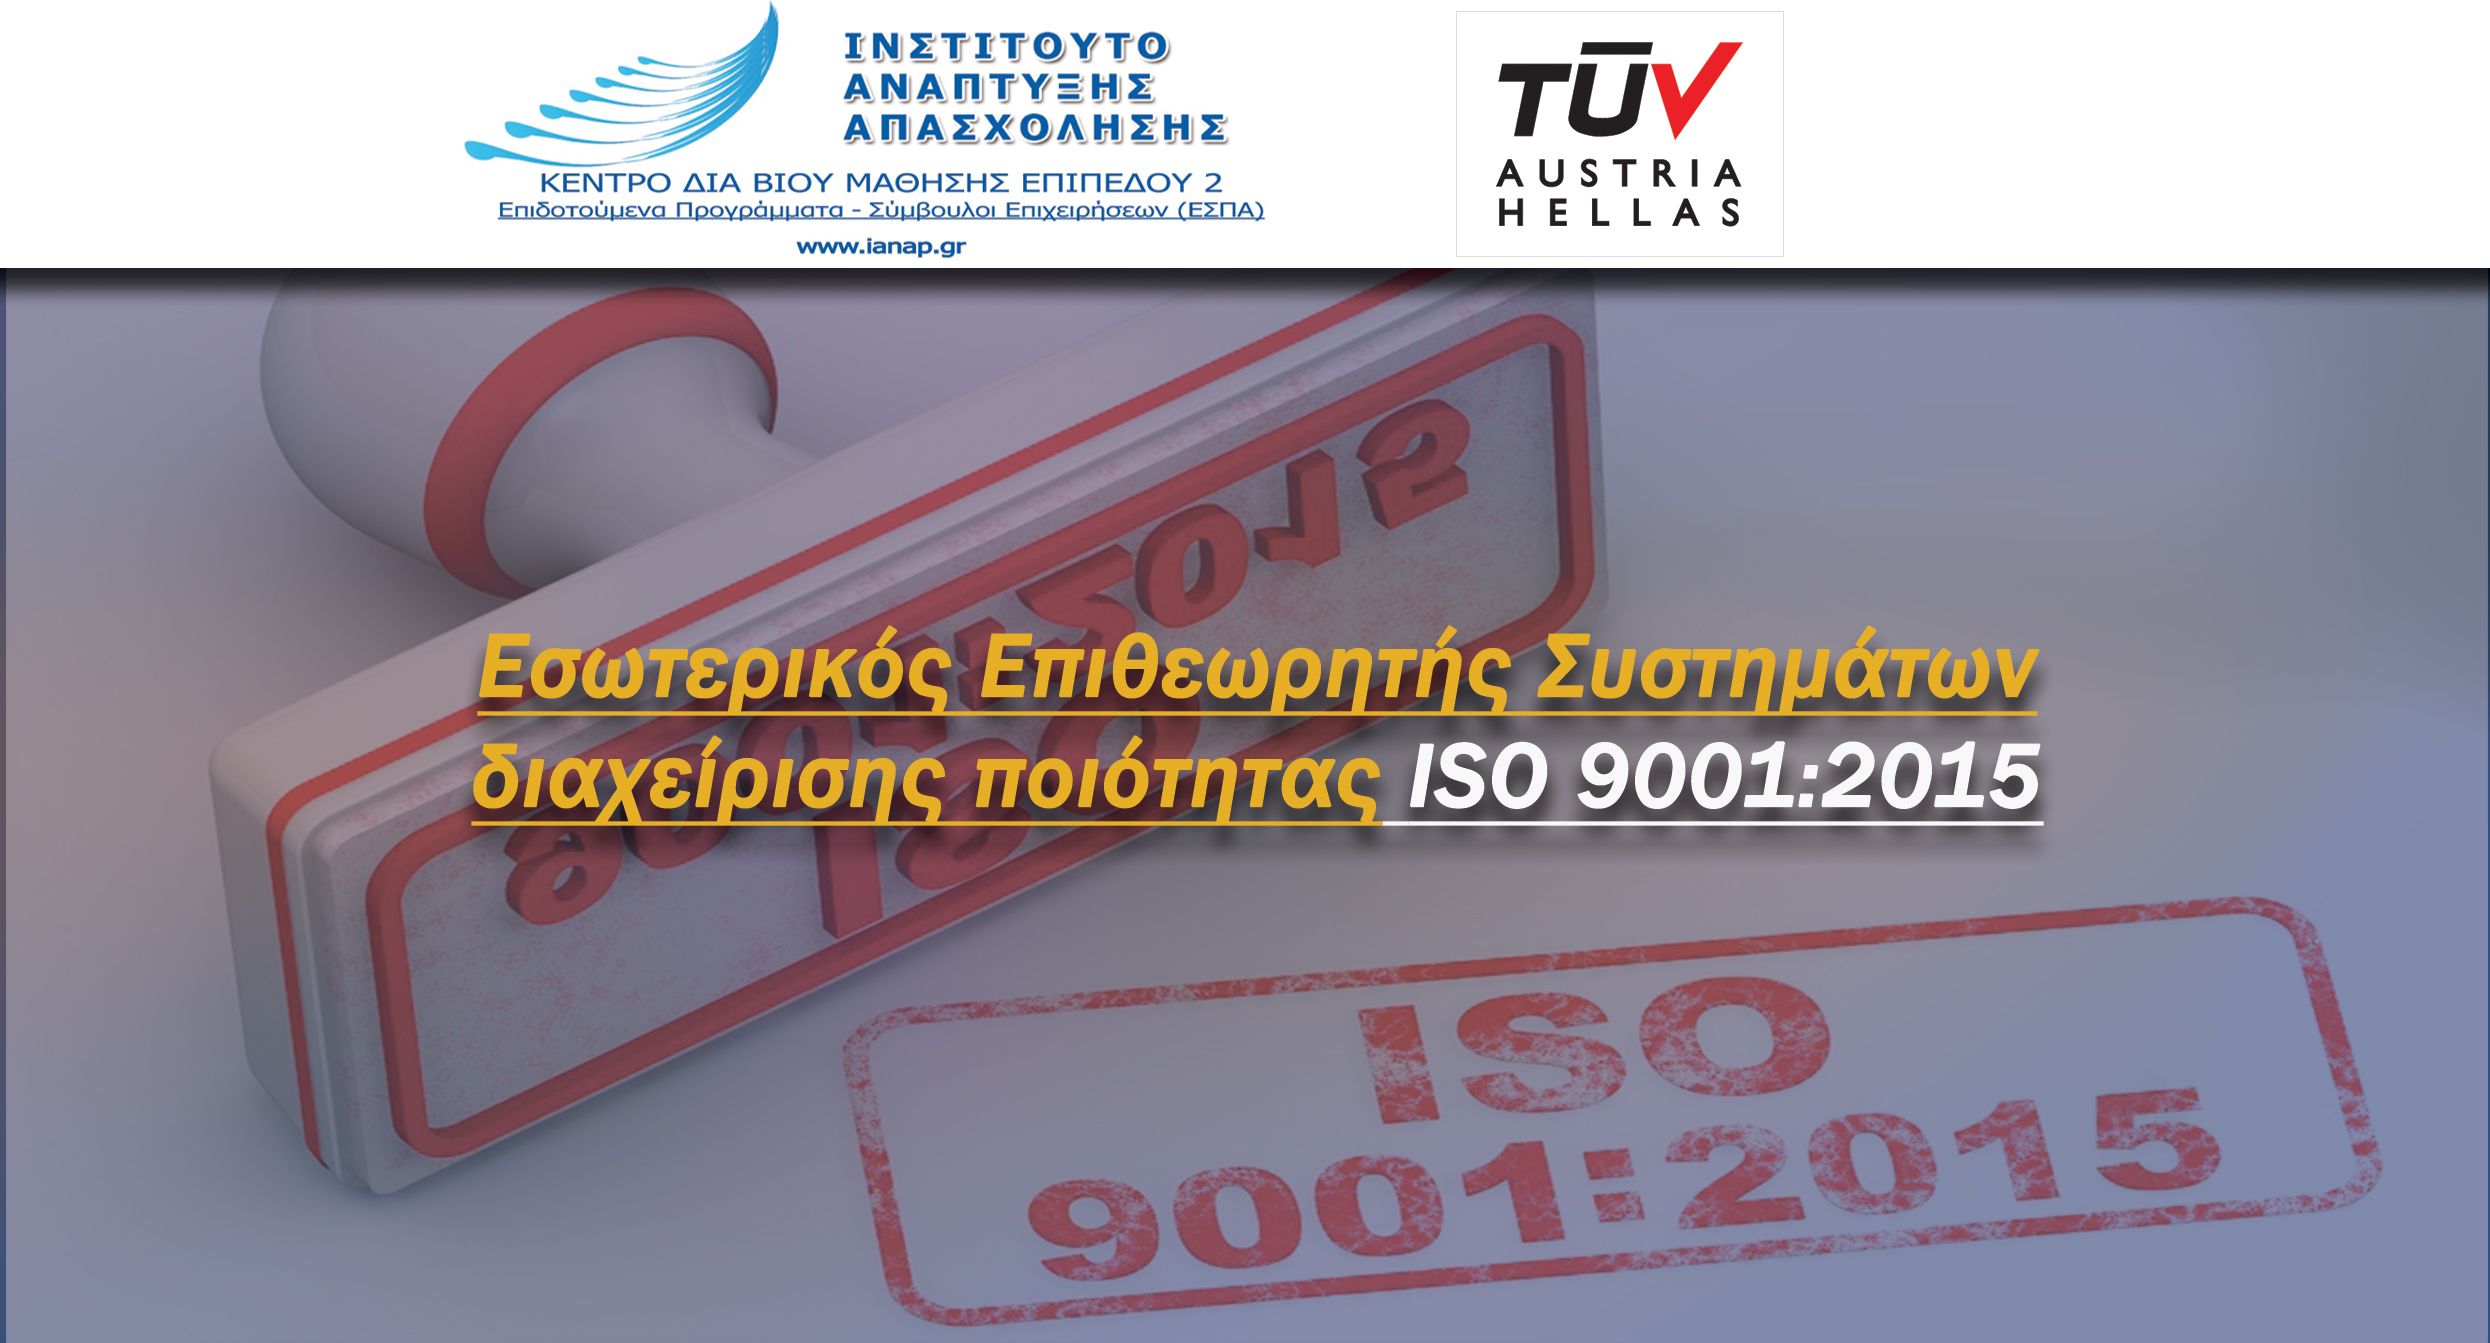 Εσωτερικός Επιθεωρητής Συστημάτων διαχείρισης ποιότητας ISO 9001:2015